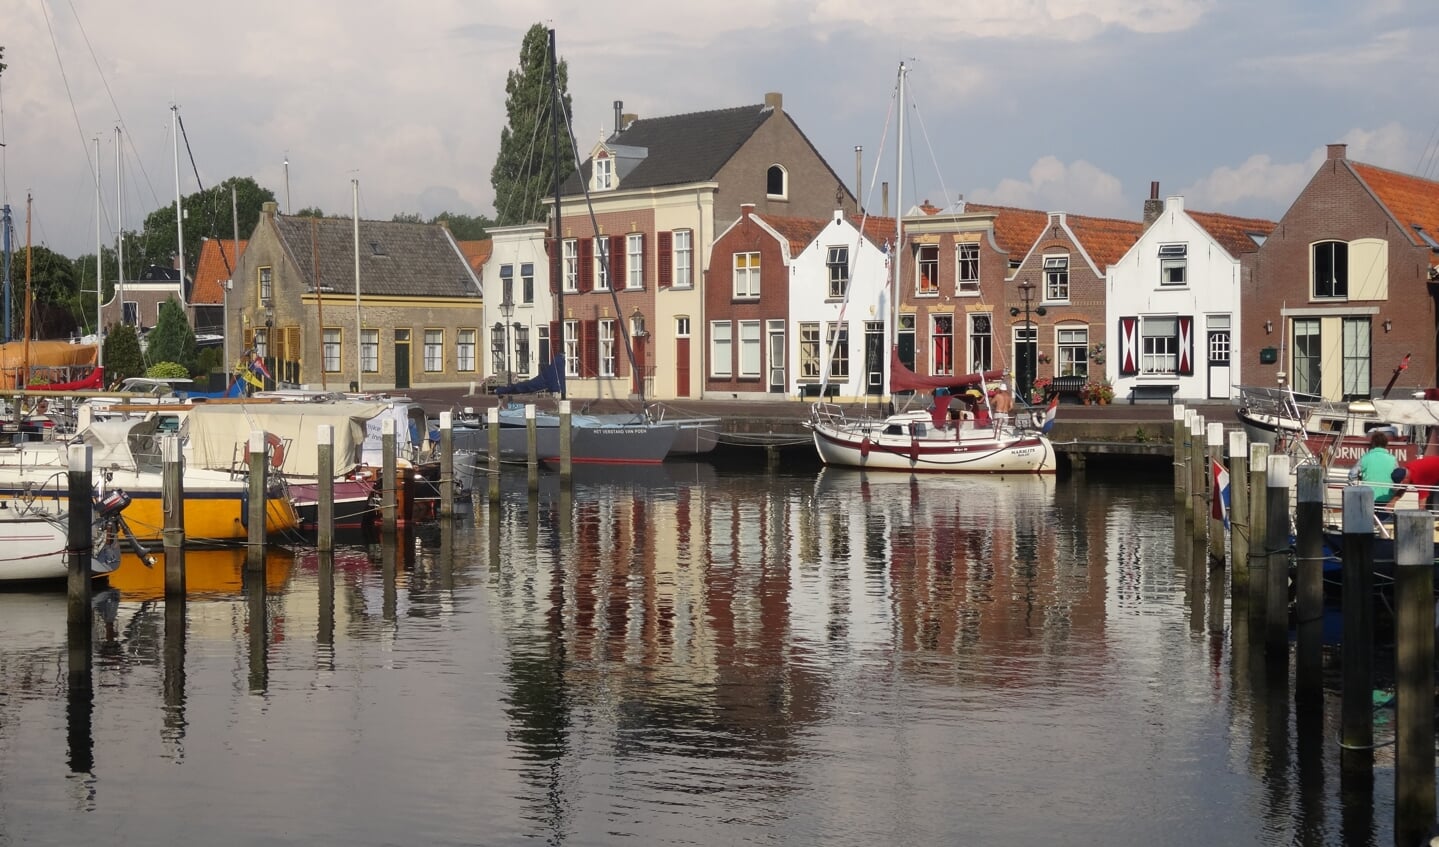 De haven van Middelharnis waar Sint en zijn Pieten aankomen op 19 november.